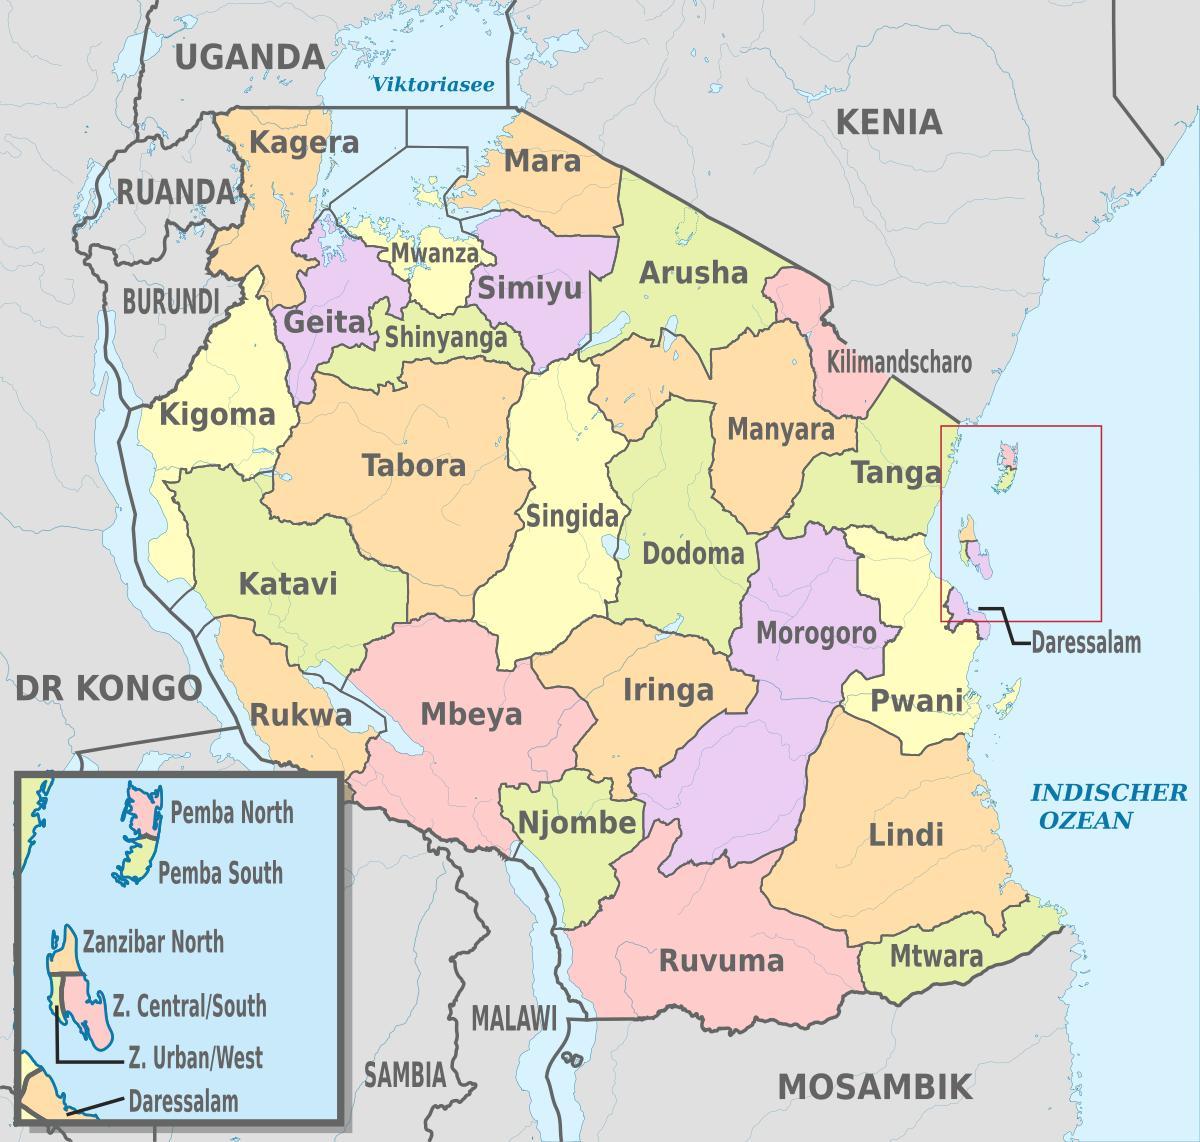 ტანზანიის რუკა ახალი რეგიონებში